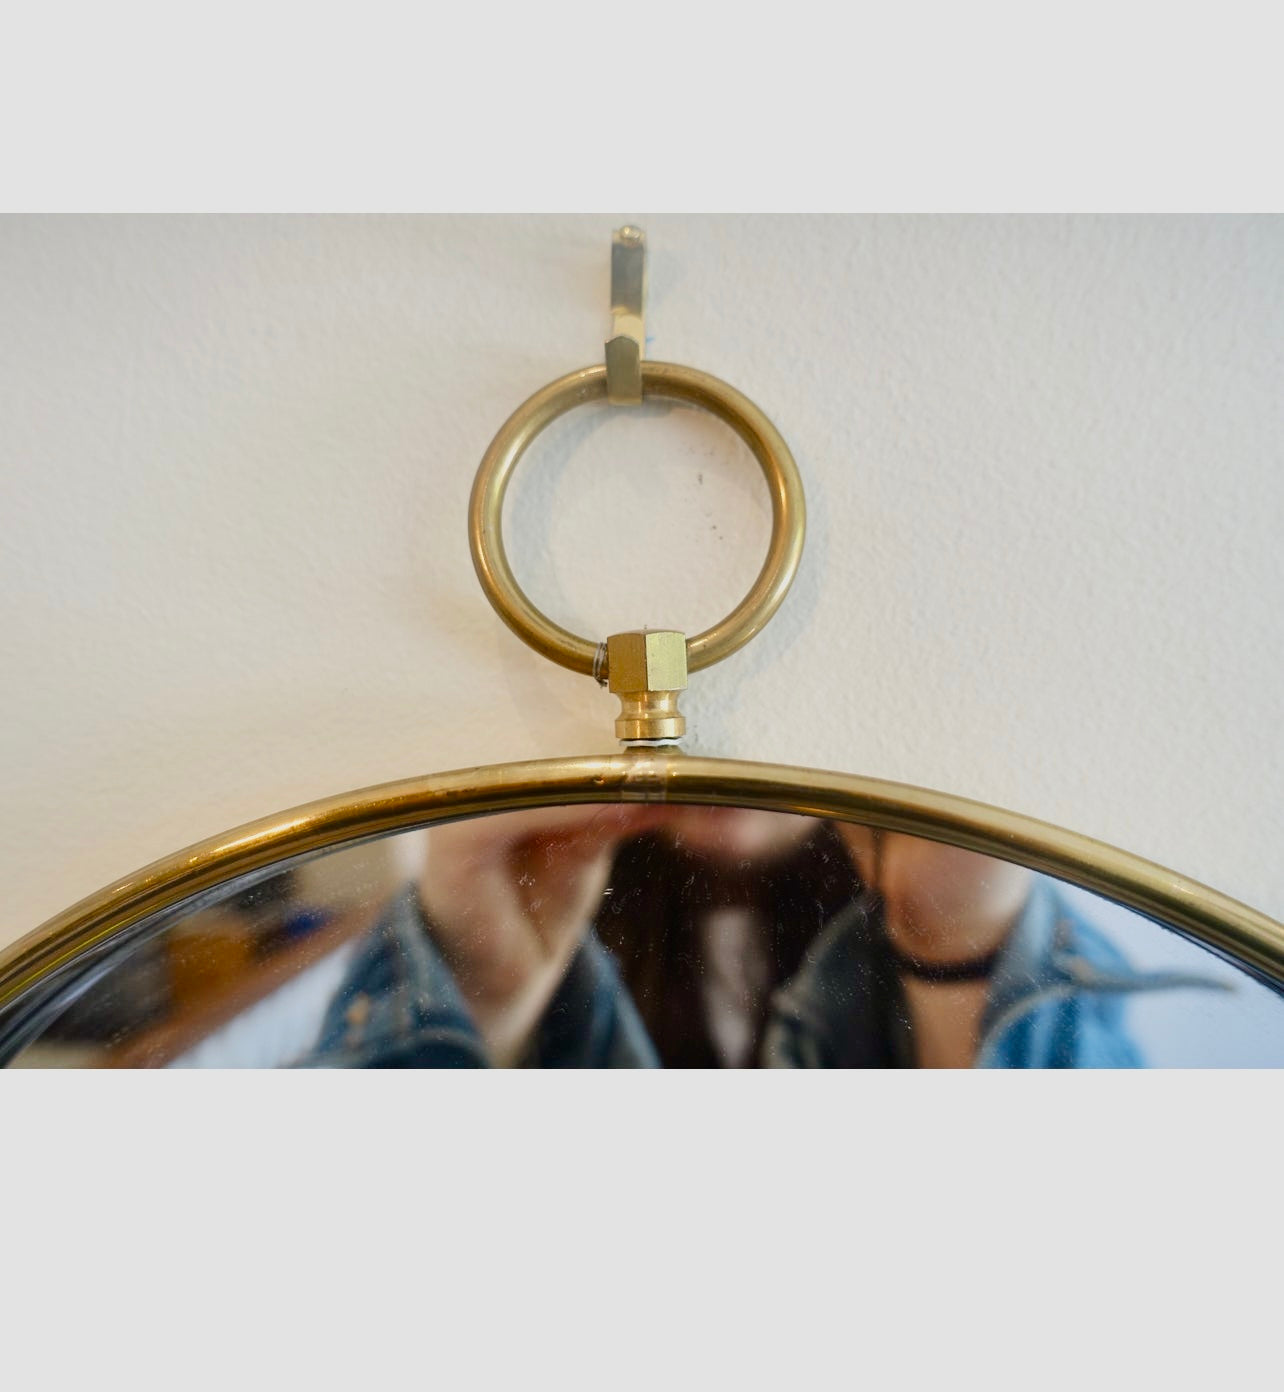 Mid Century brass round wall mirror 12” in diameter